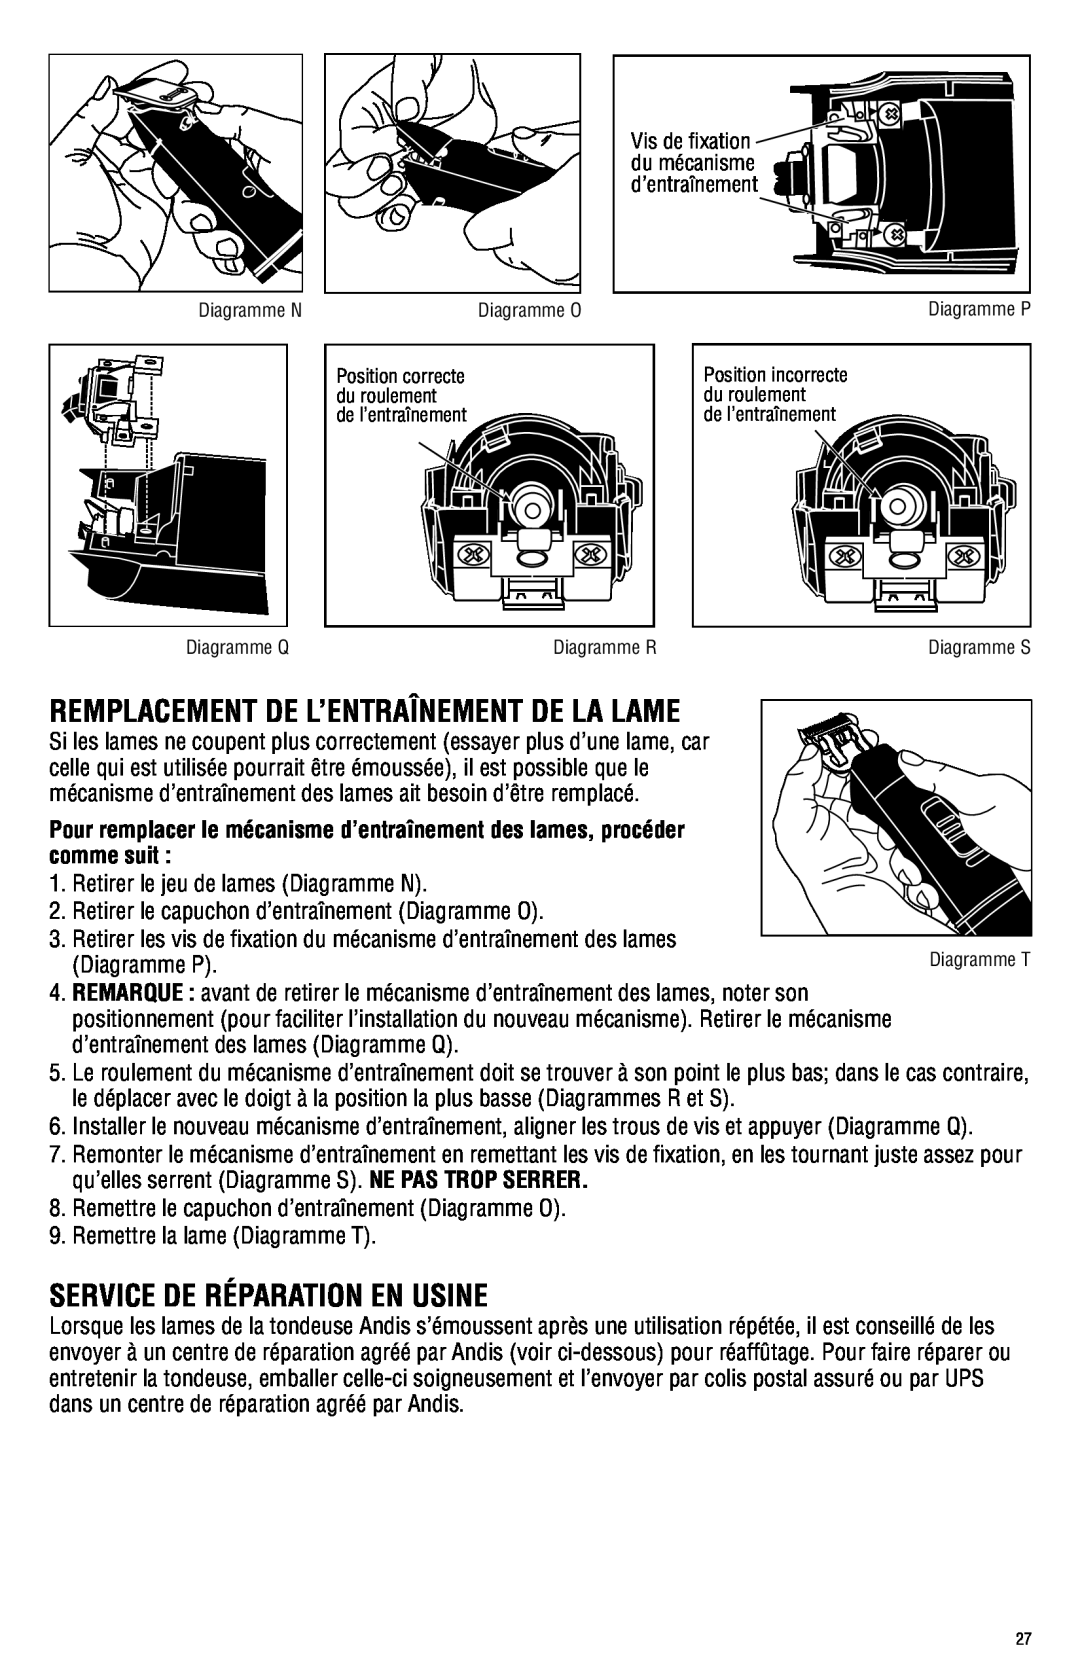 Andis Company AGRC manual Remplacement De L’Entraînement De La Lame, Service De Réparation En Usine 